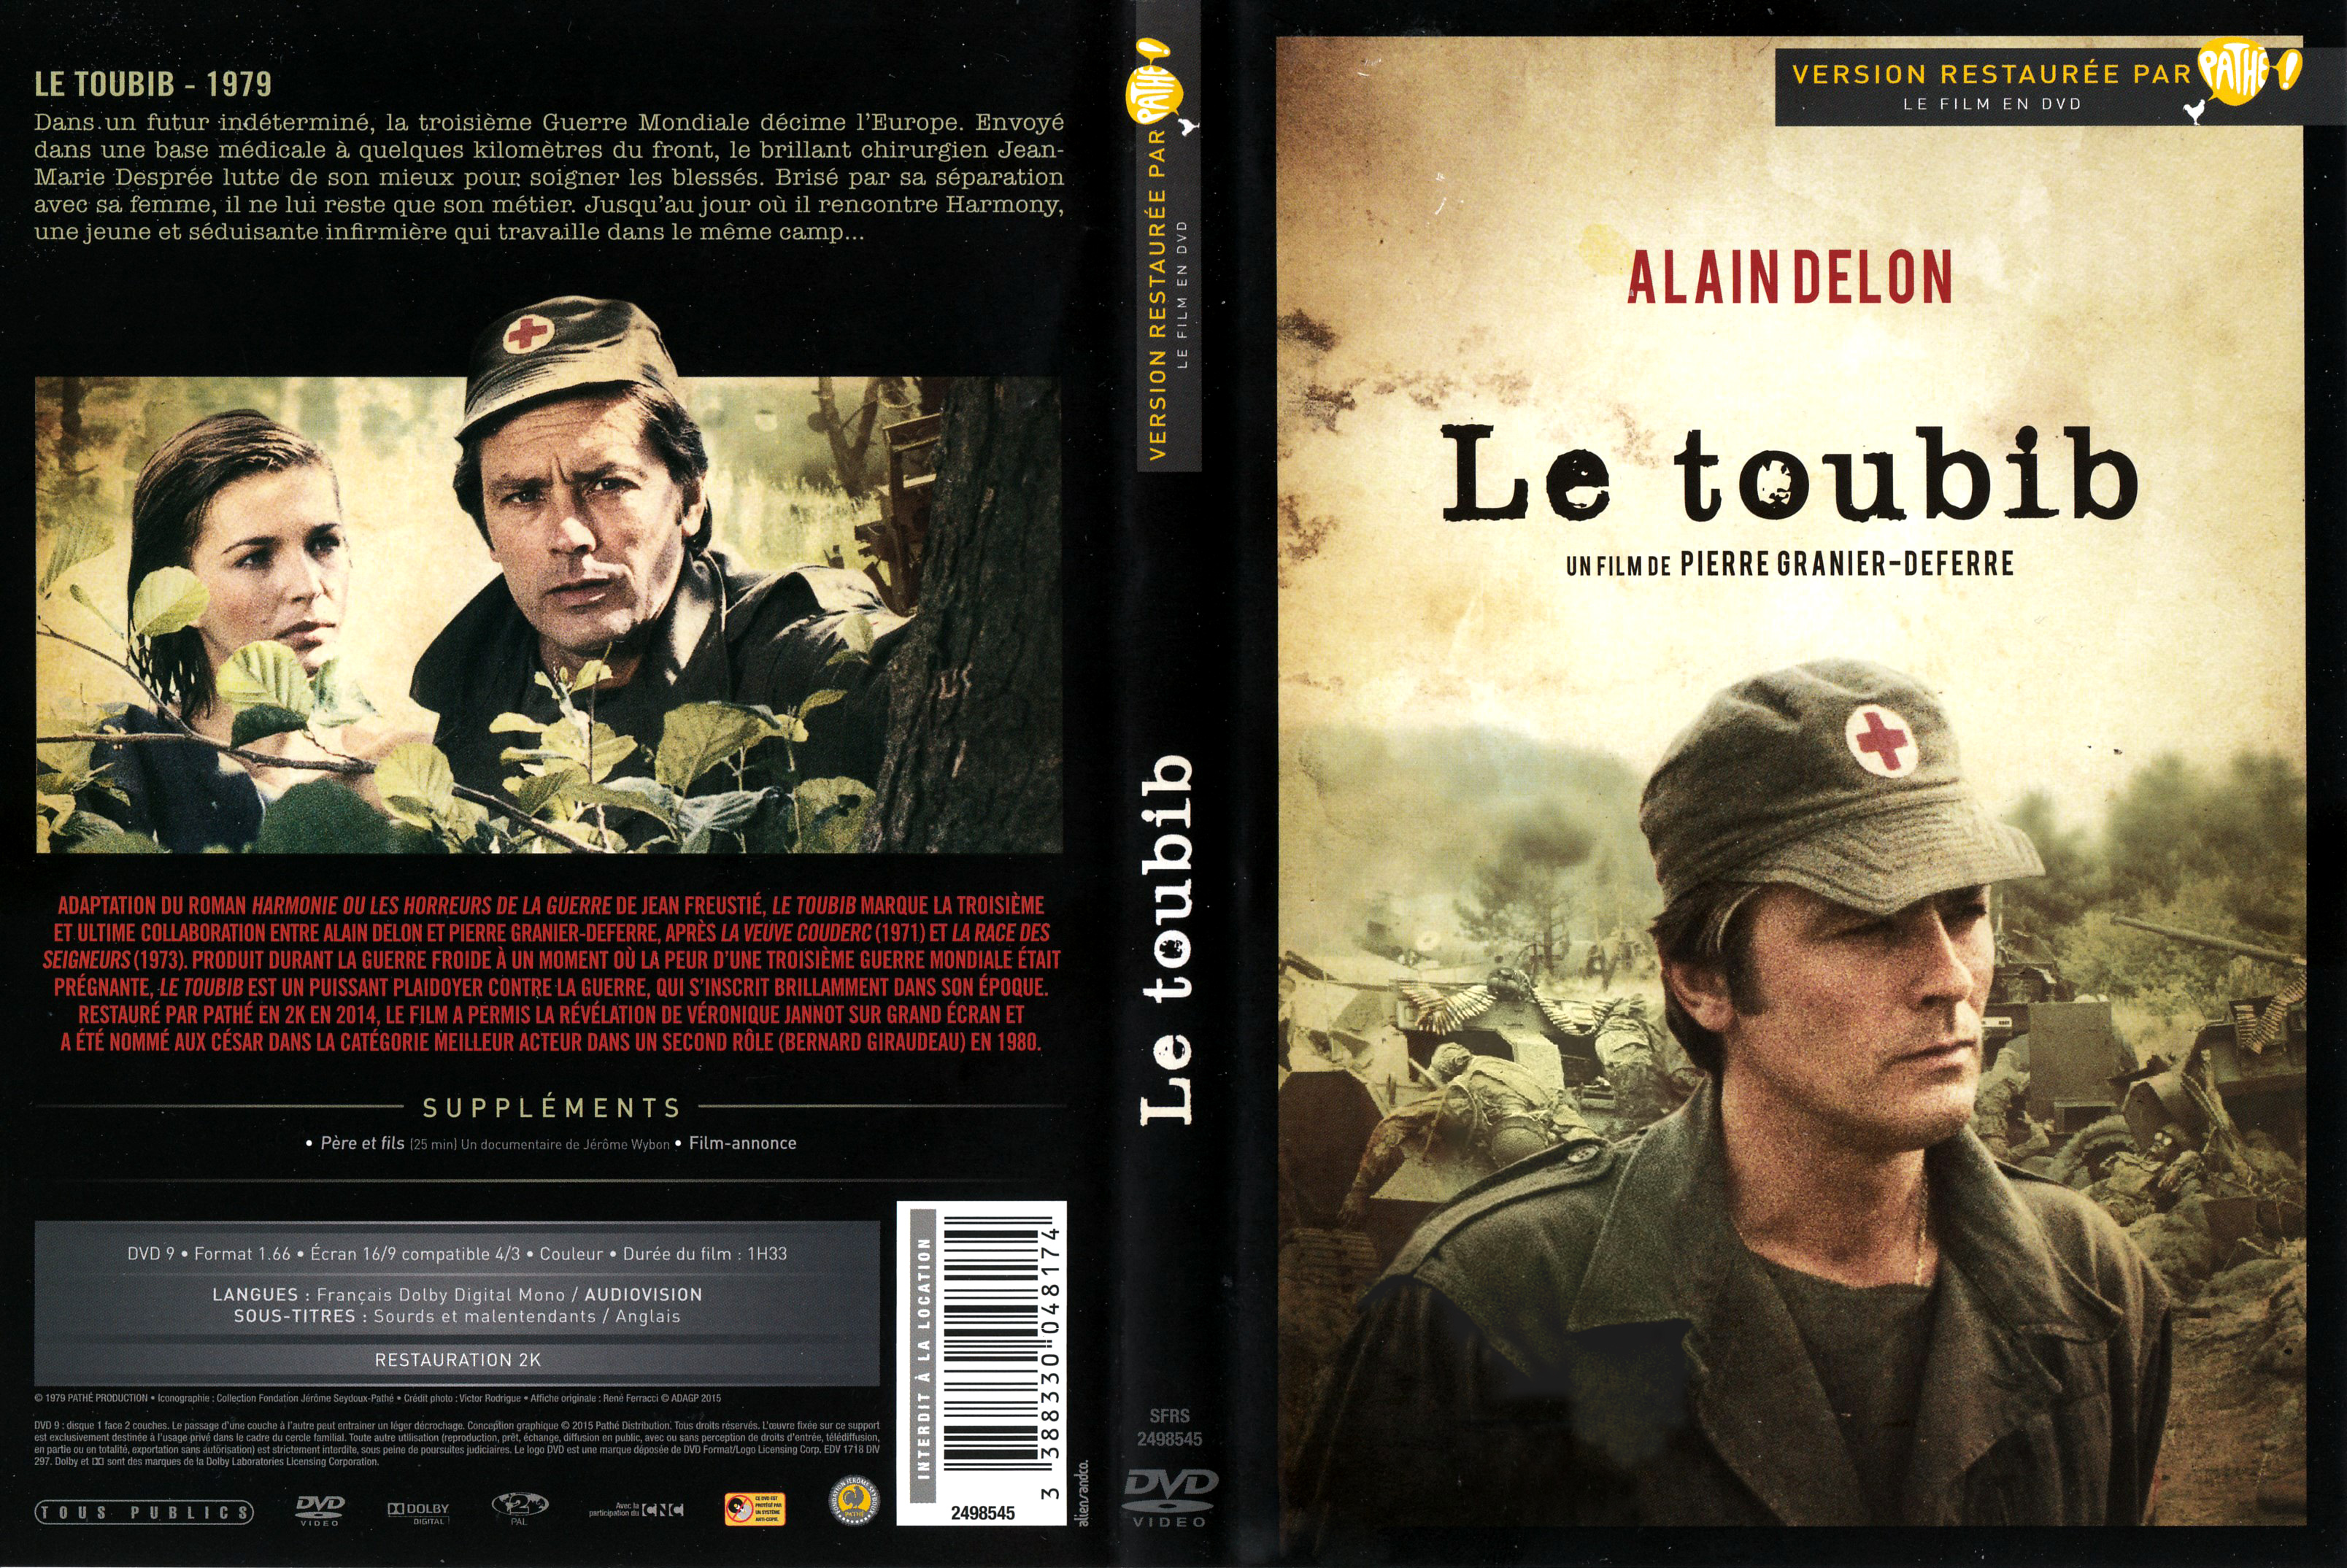 Jaquette DVD Le toubib v2